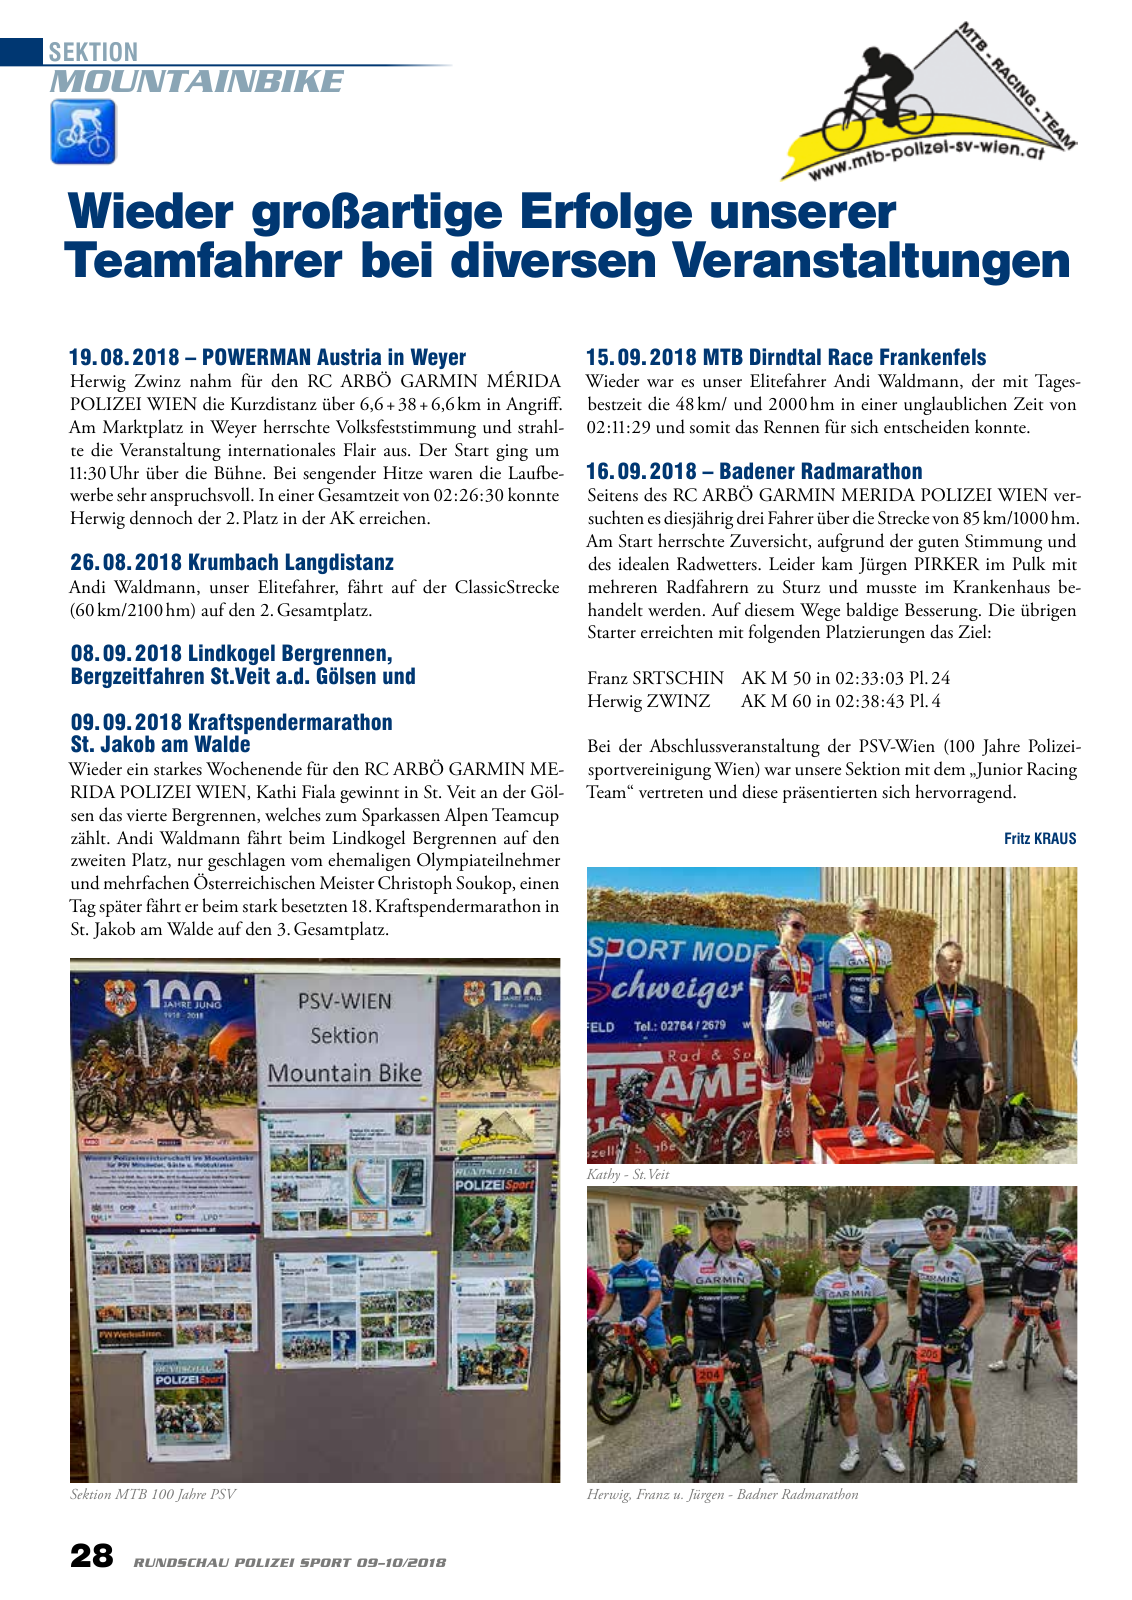 Vorschau Rundschau Polizei Sport 09-10/2018 Seite 28